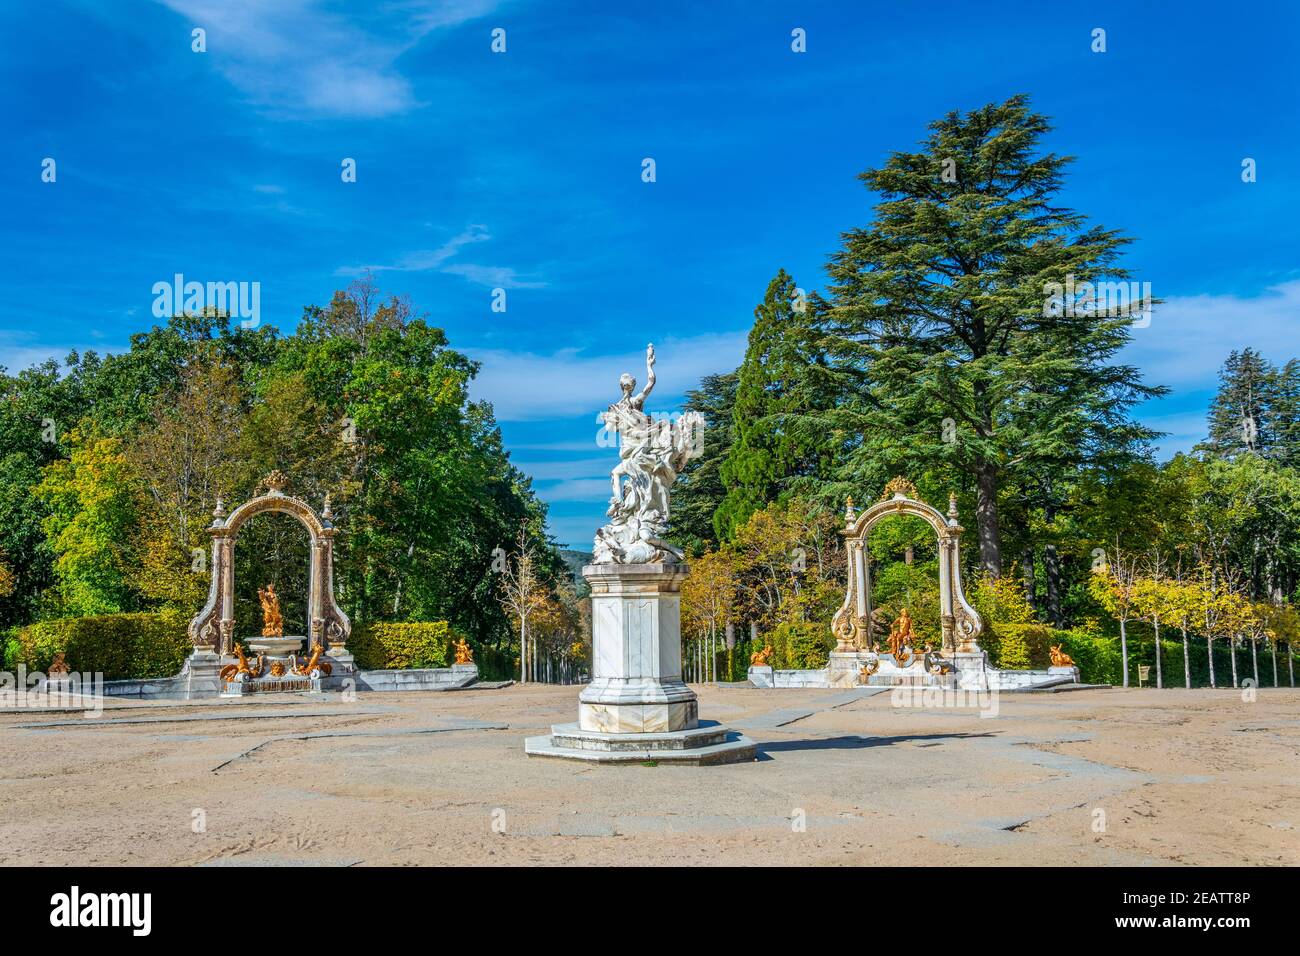 Plaza de las Fuentes de los Dioses  at la Granja de San Ildefonso palace in Spain Stock Photo